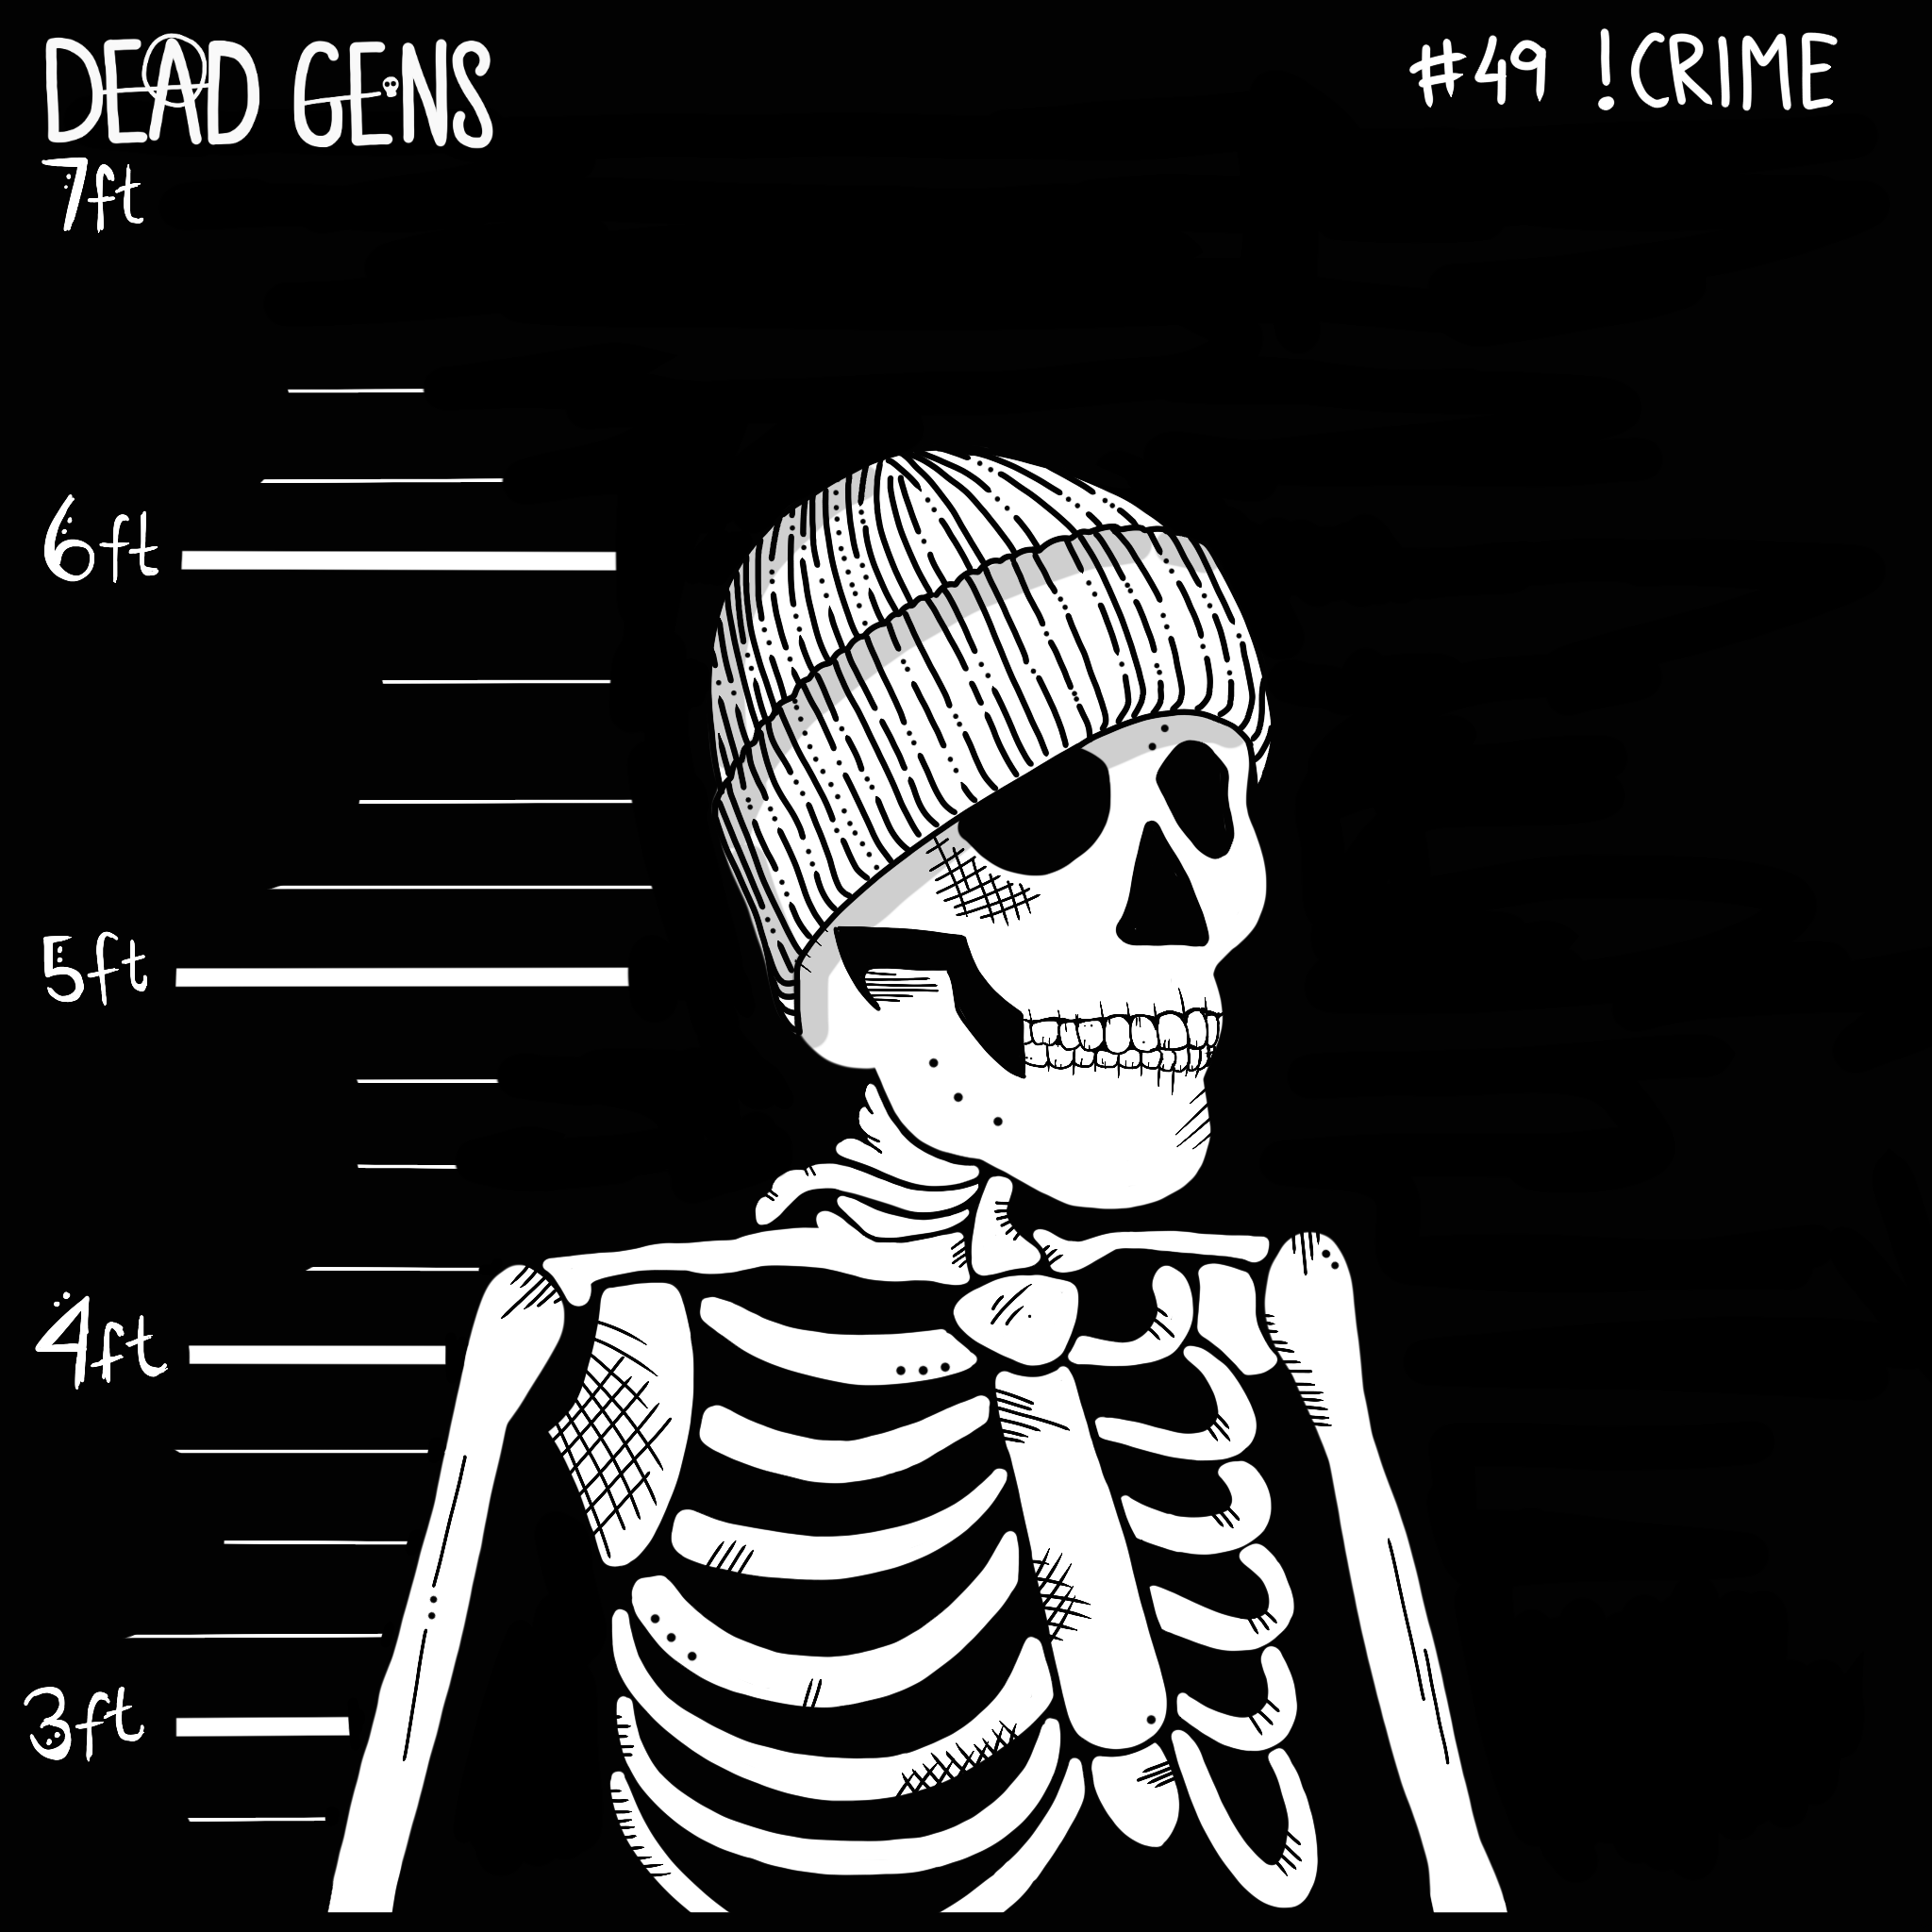 Dead Gen #49